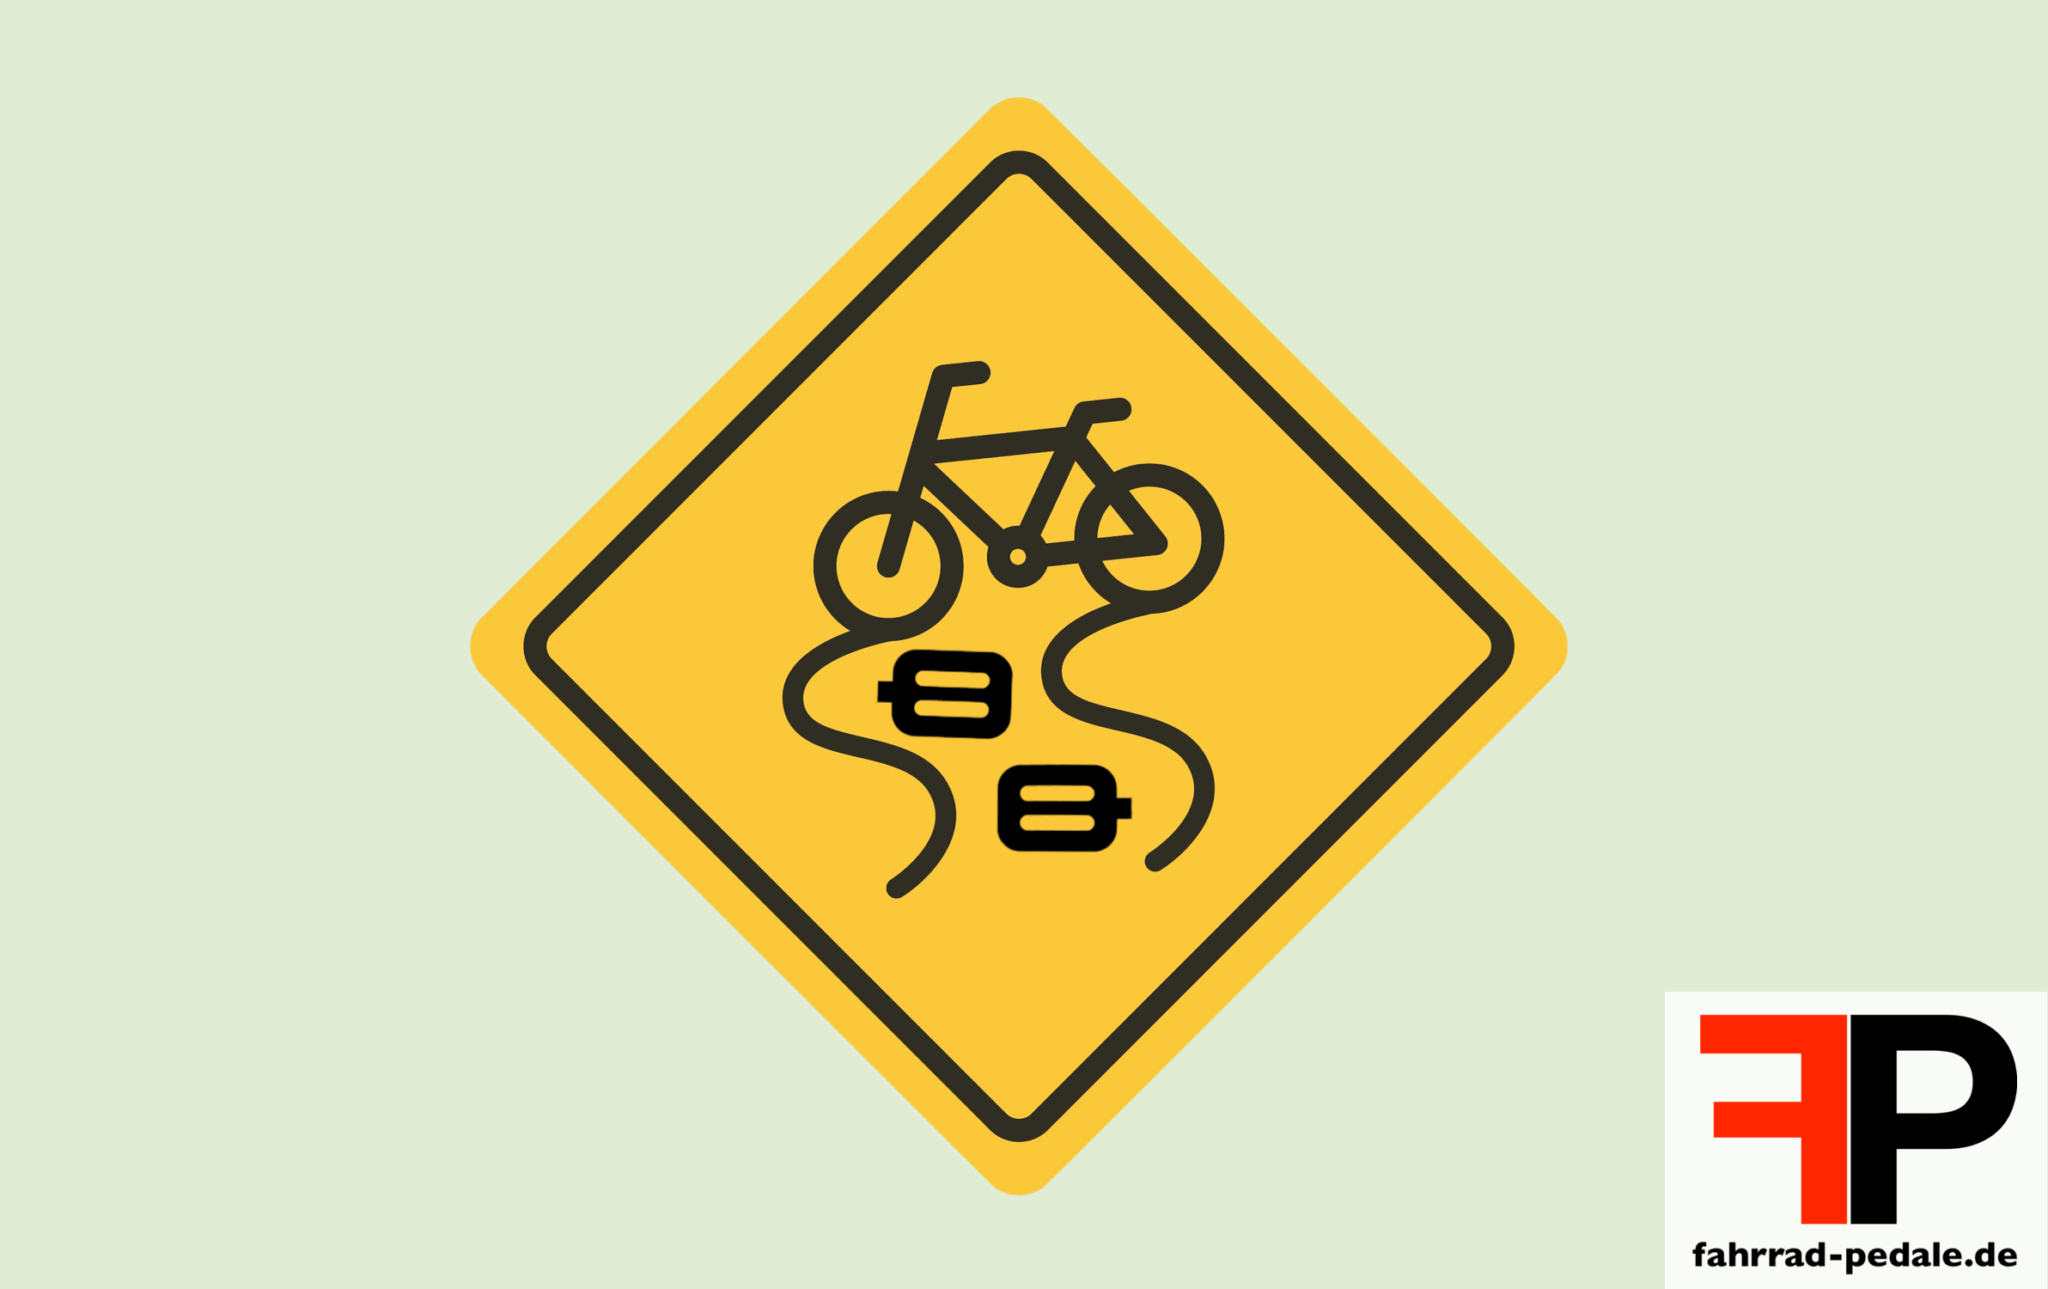 9 FahrradPedale, die rutschfest sind